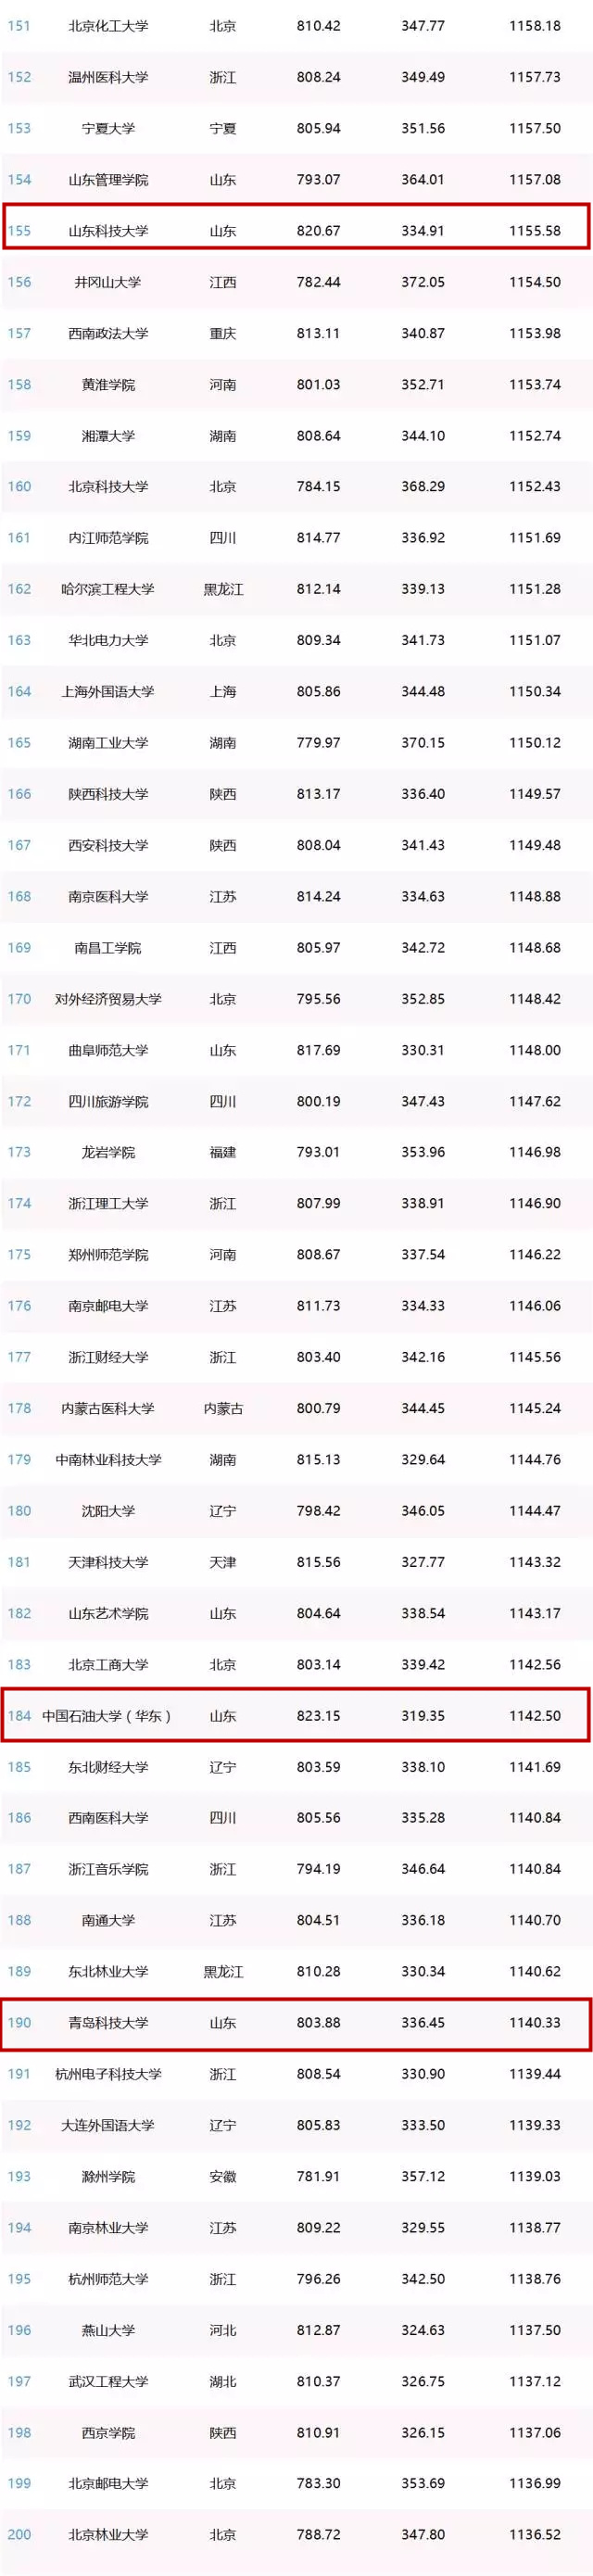 中国网红高校排行榜发布 青岛五校上榜